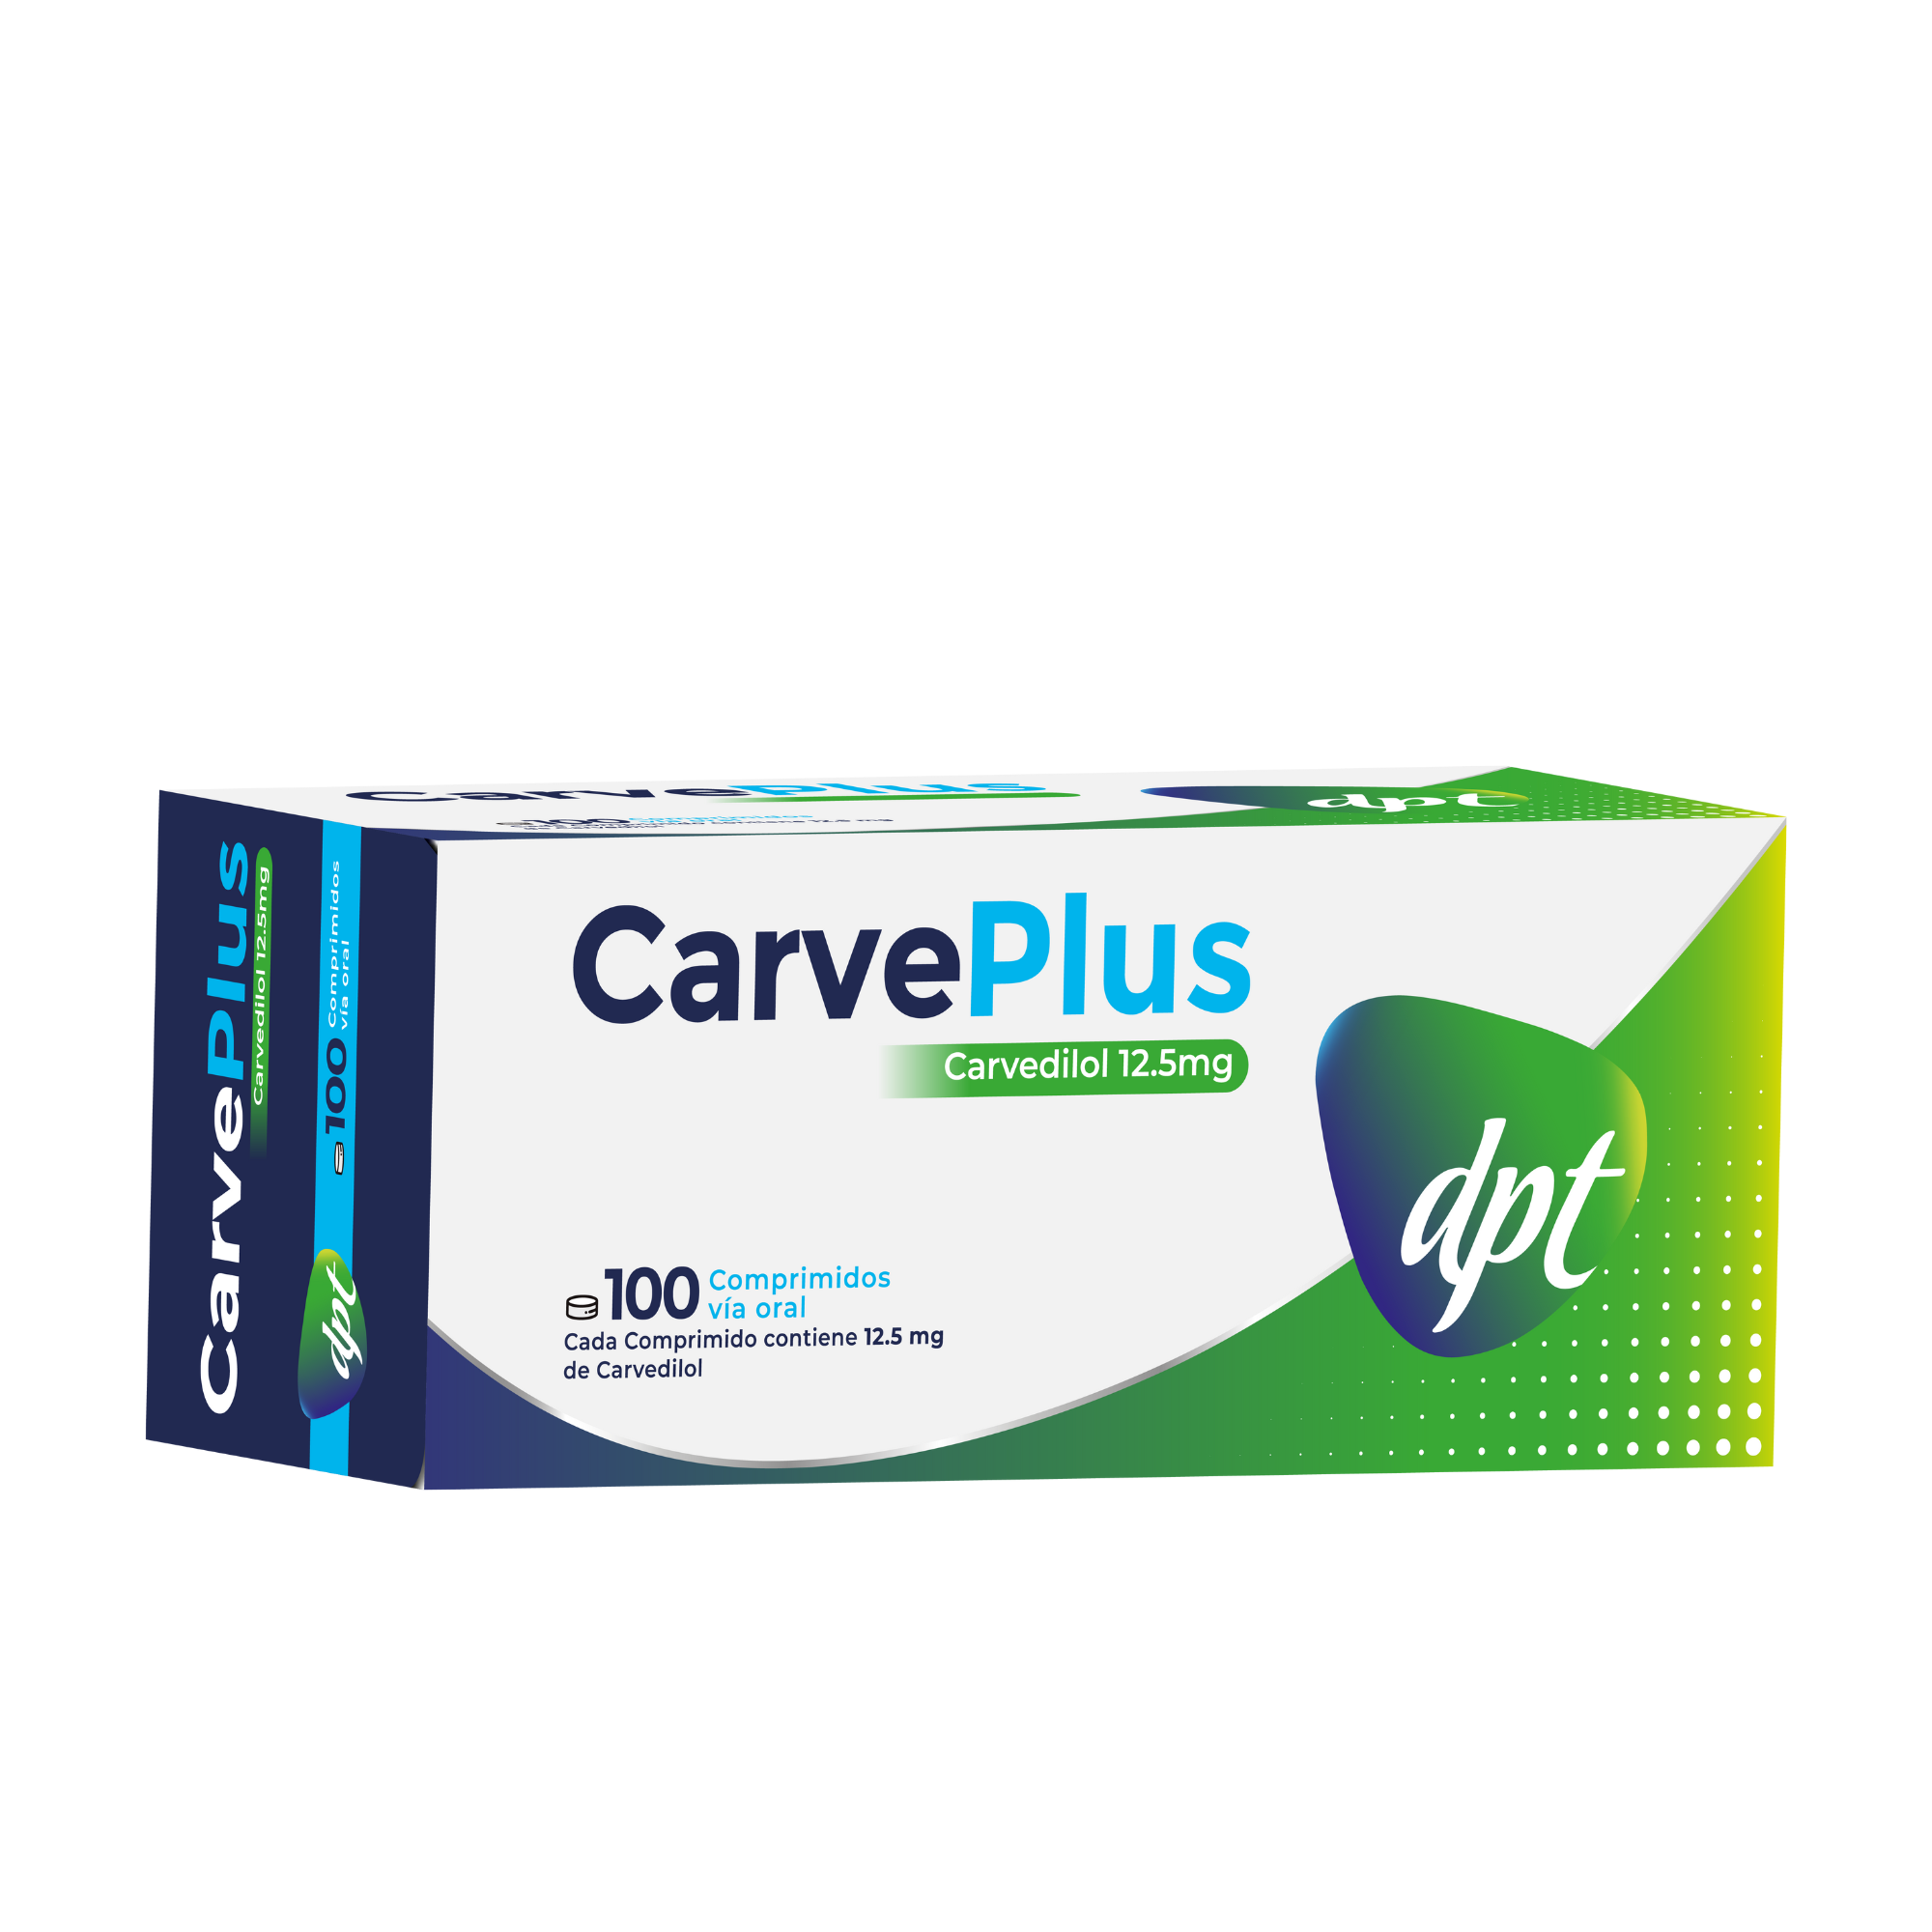 CarvePlus (Carvedilol)